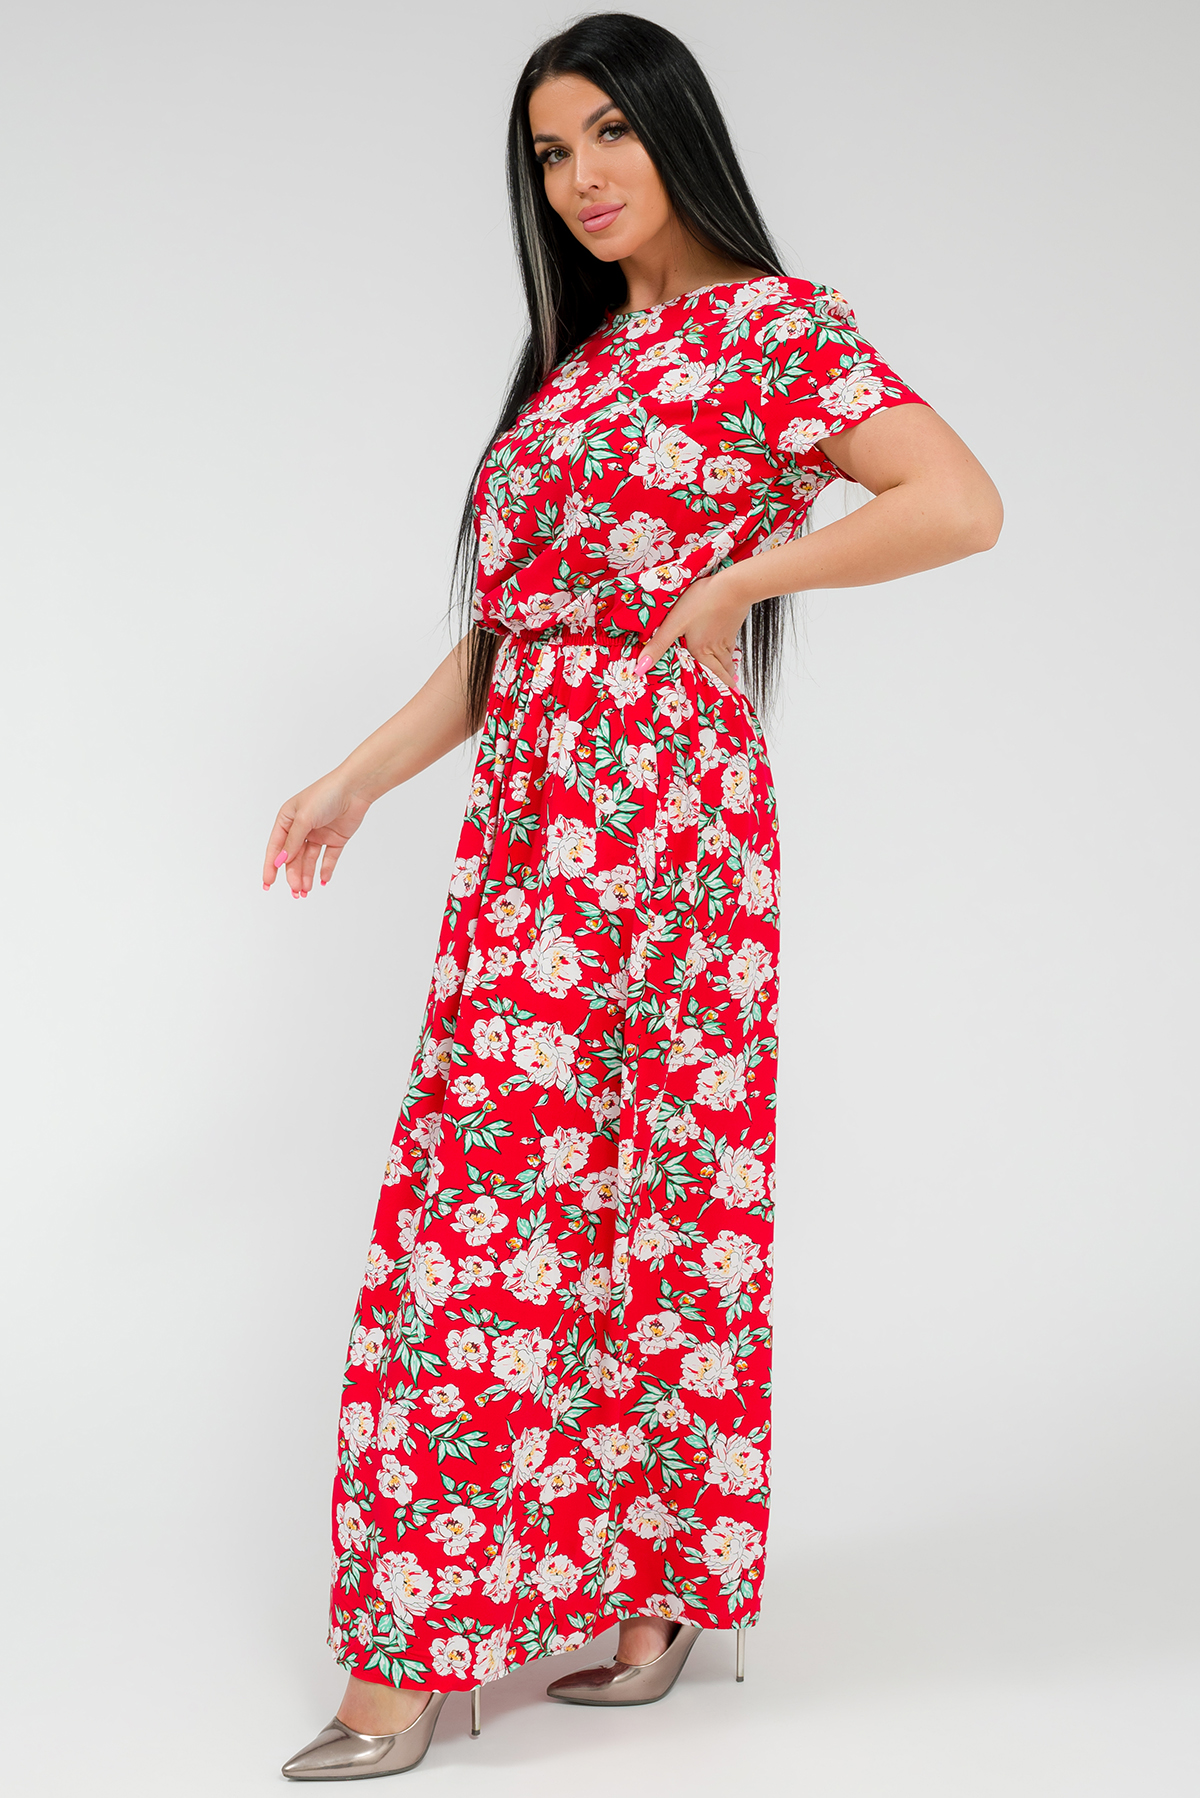 Платье женское Ш'аrliзе 0926 красное 48 RU